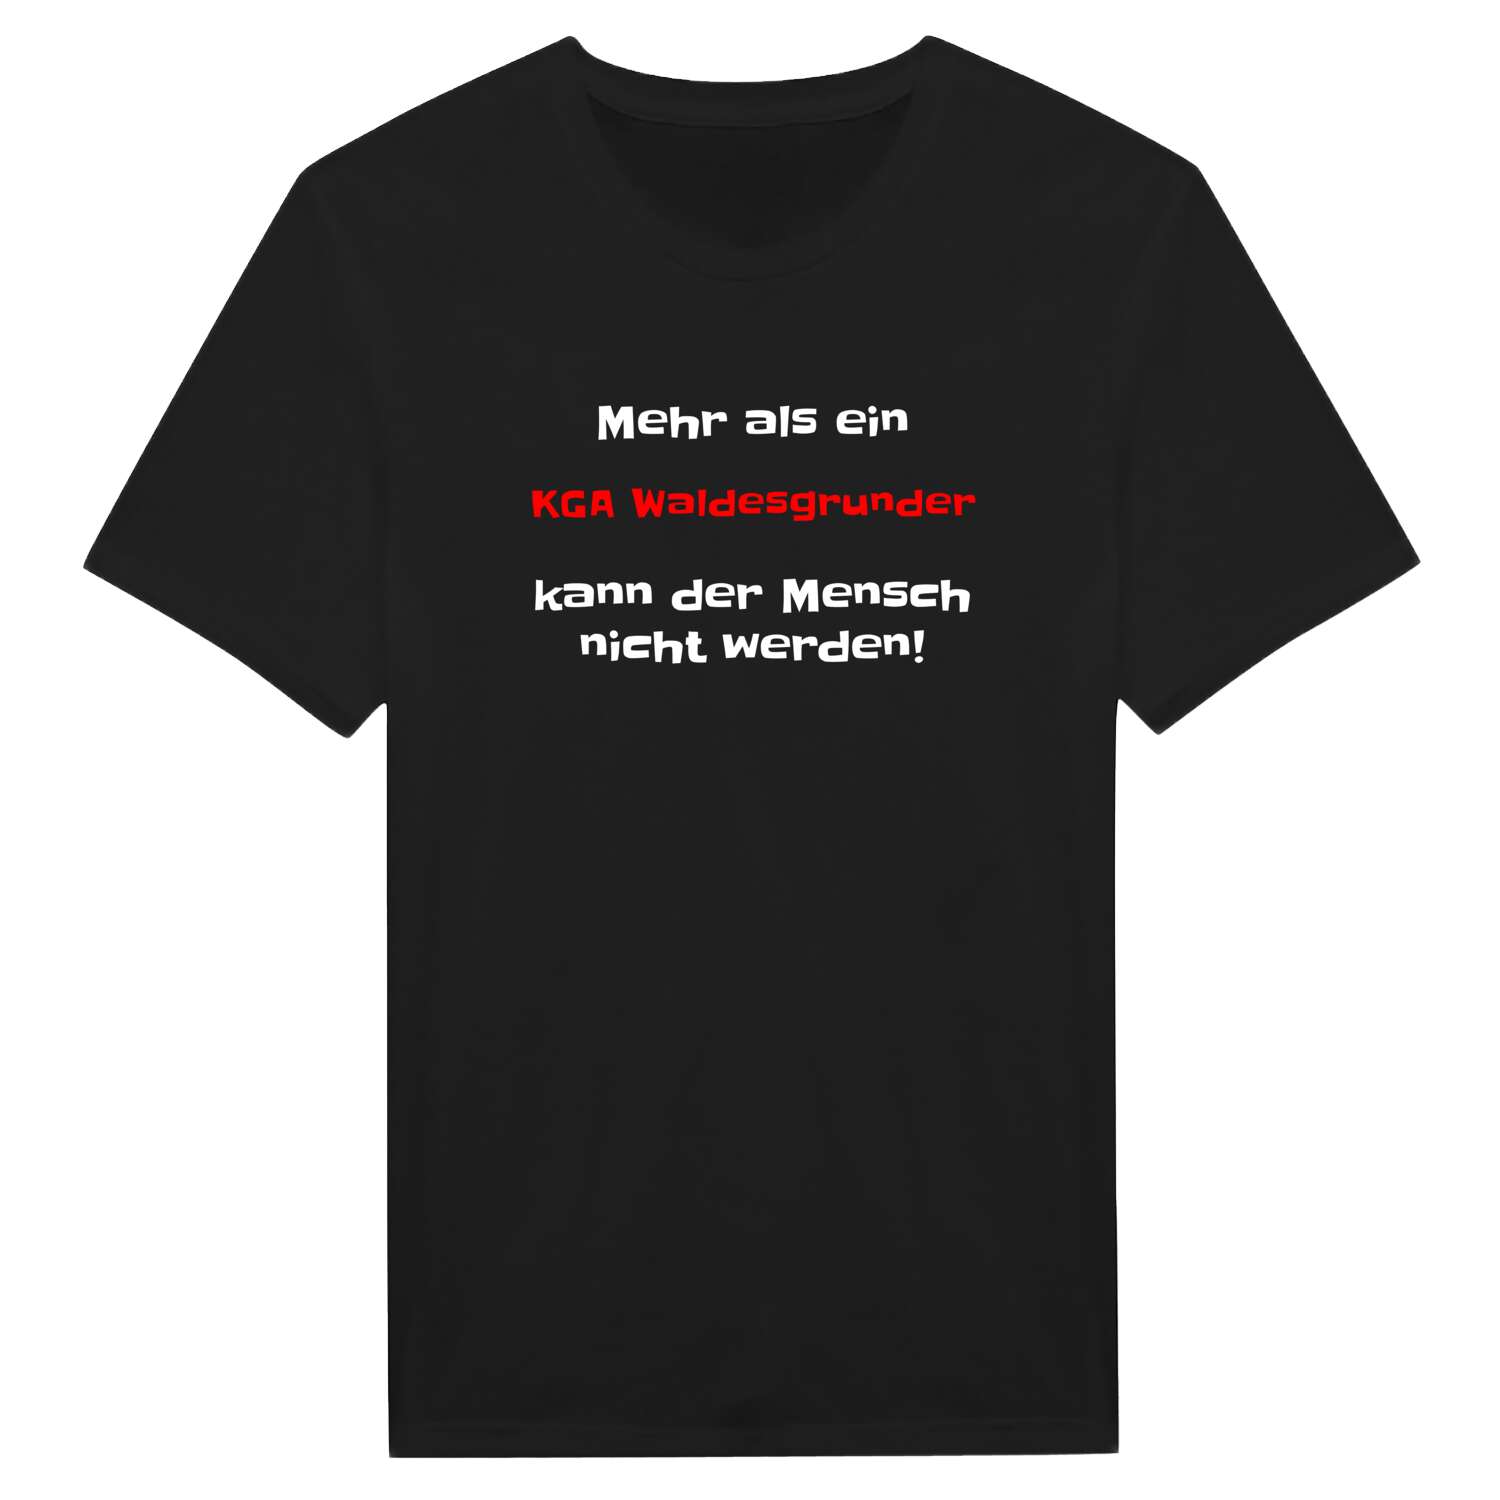 KGA Waldesgrund T-Shirt »Mehr als ein«